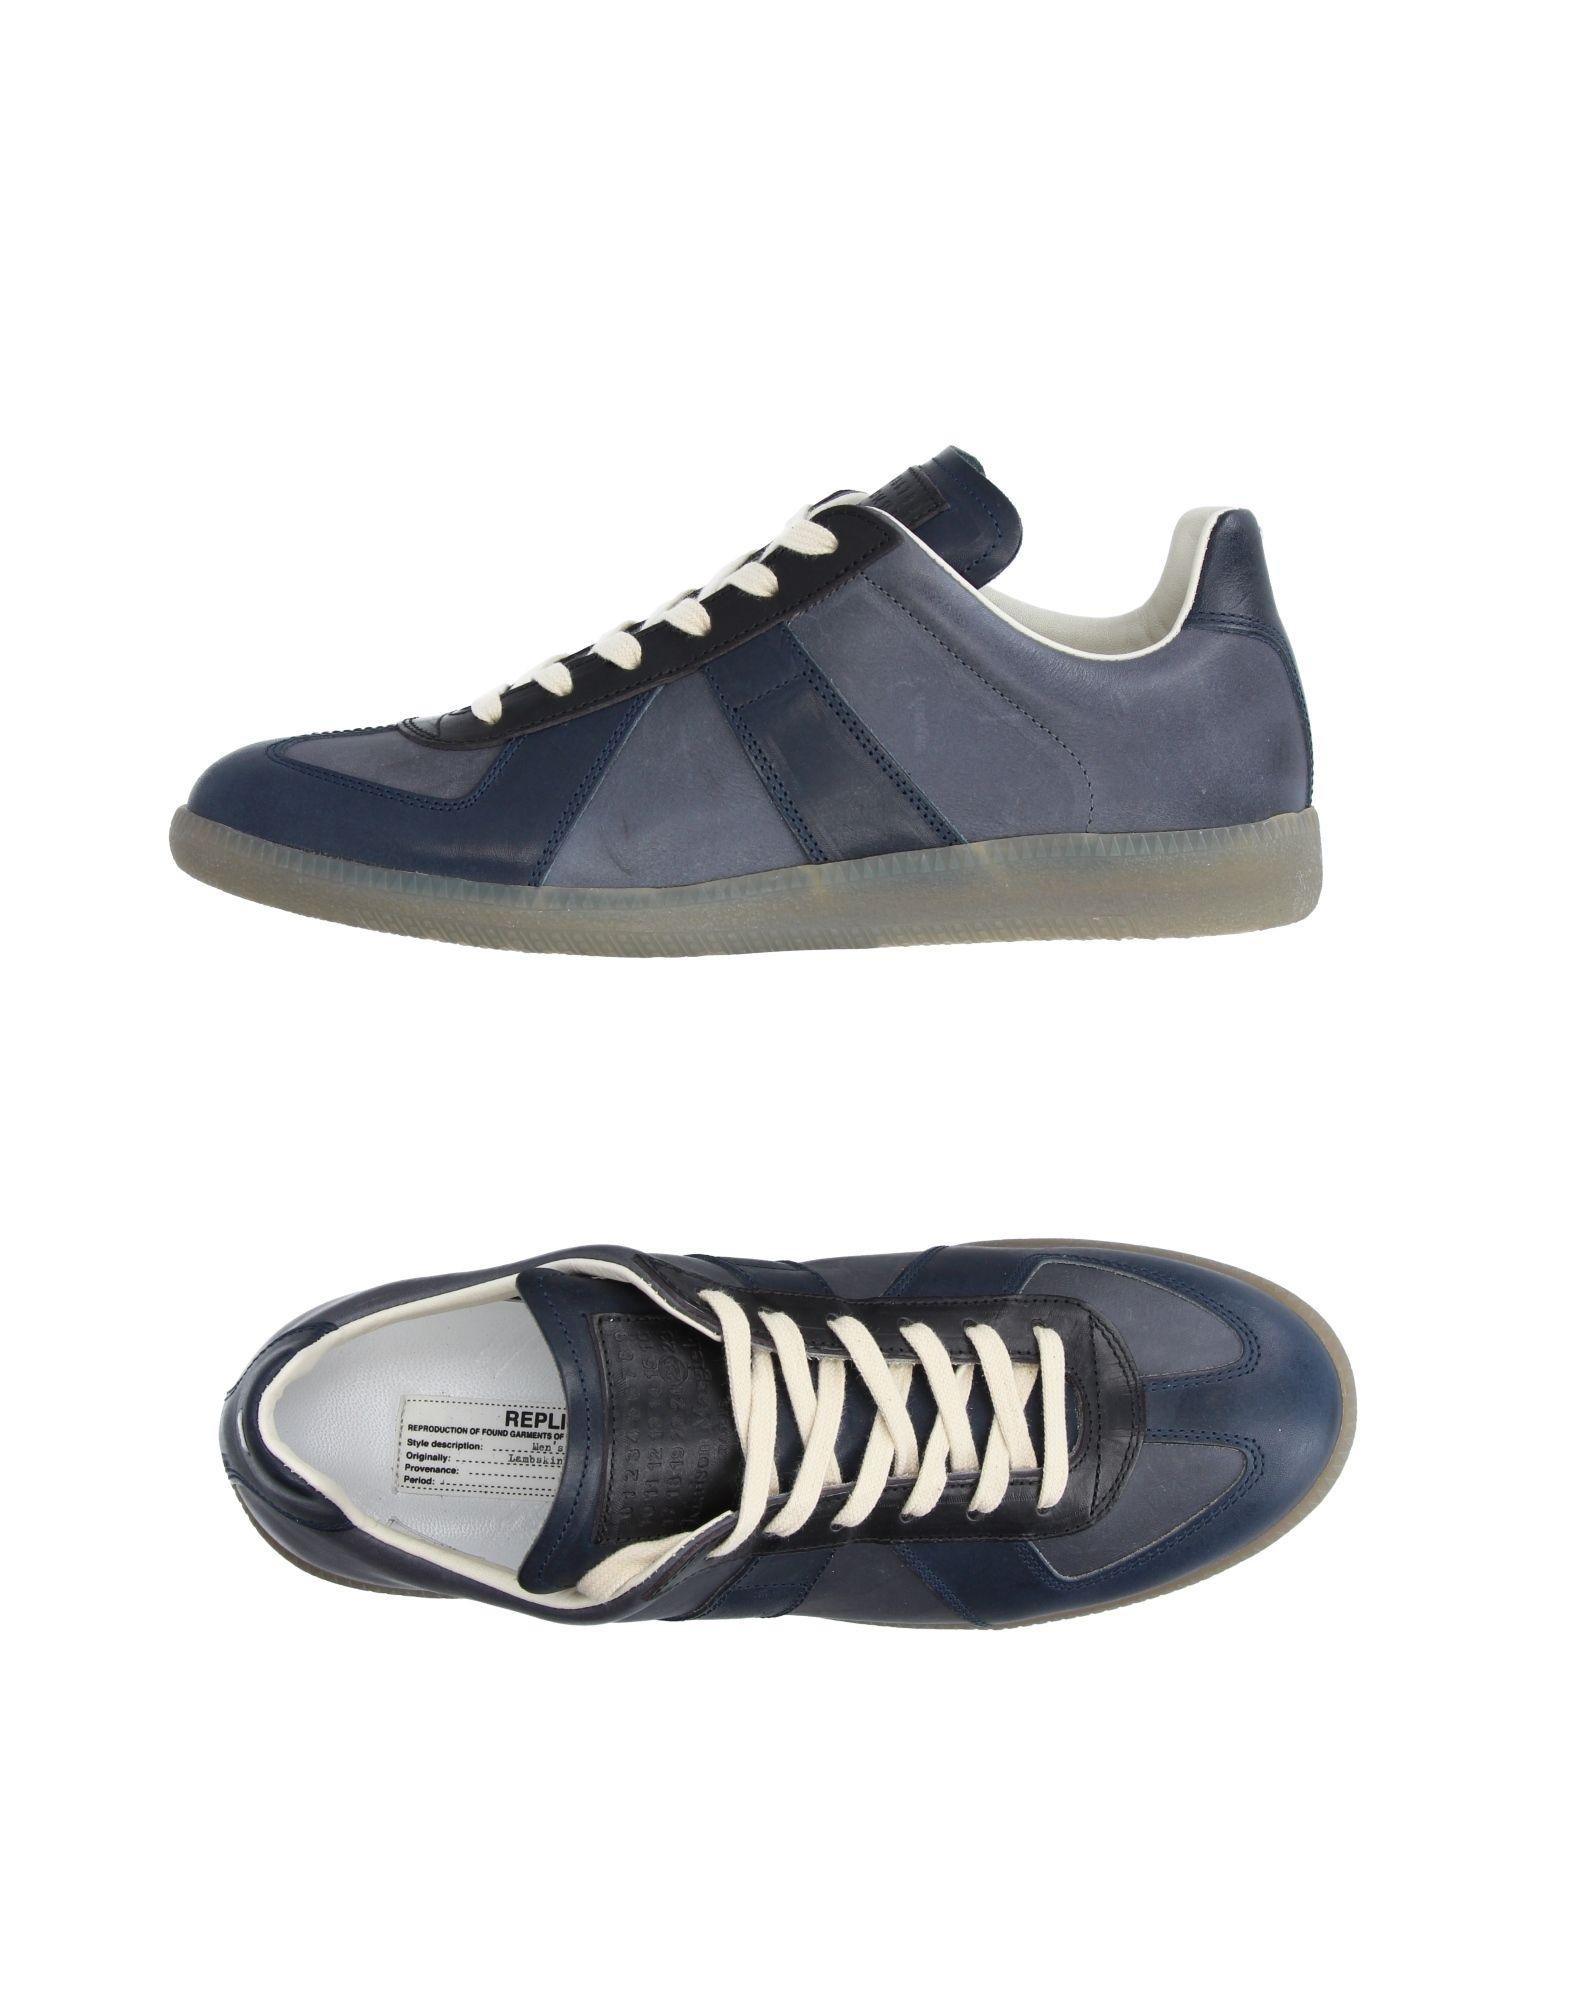 Maison margiela Low-tops & Sneakers in Blue for Men | Lyst